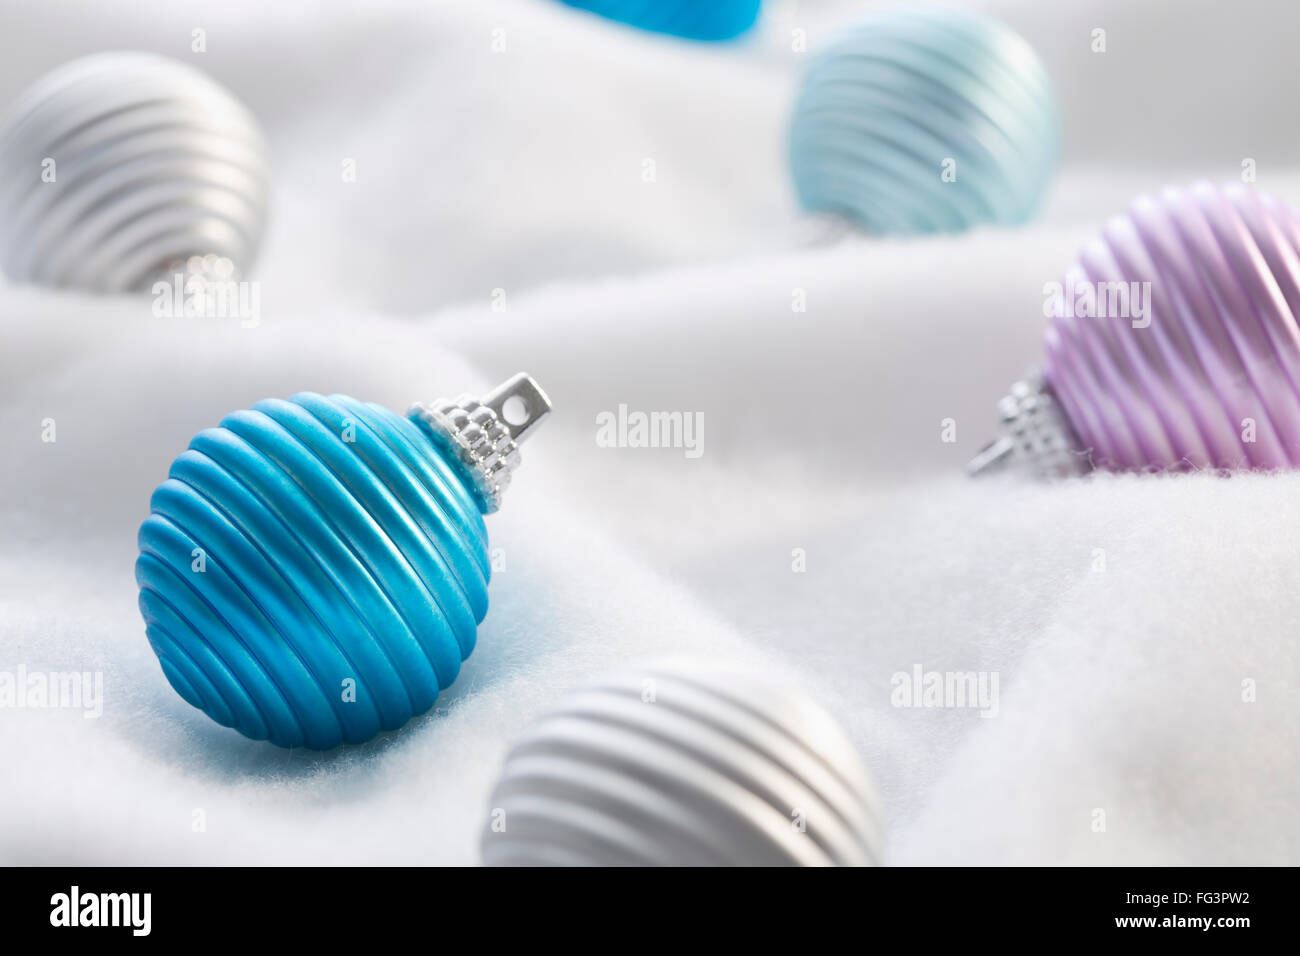 Christmas baubles on white textile Stock Photo